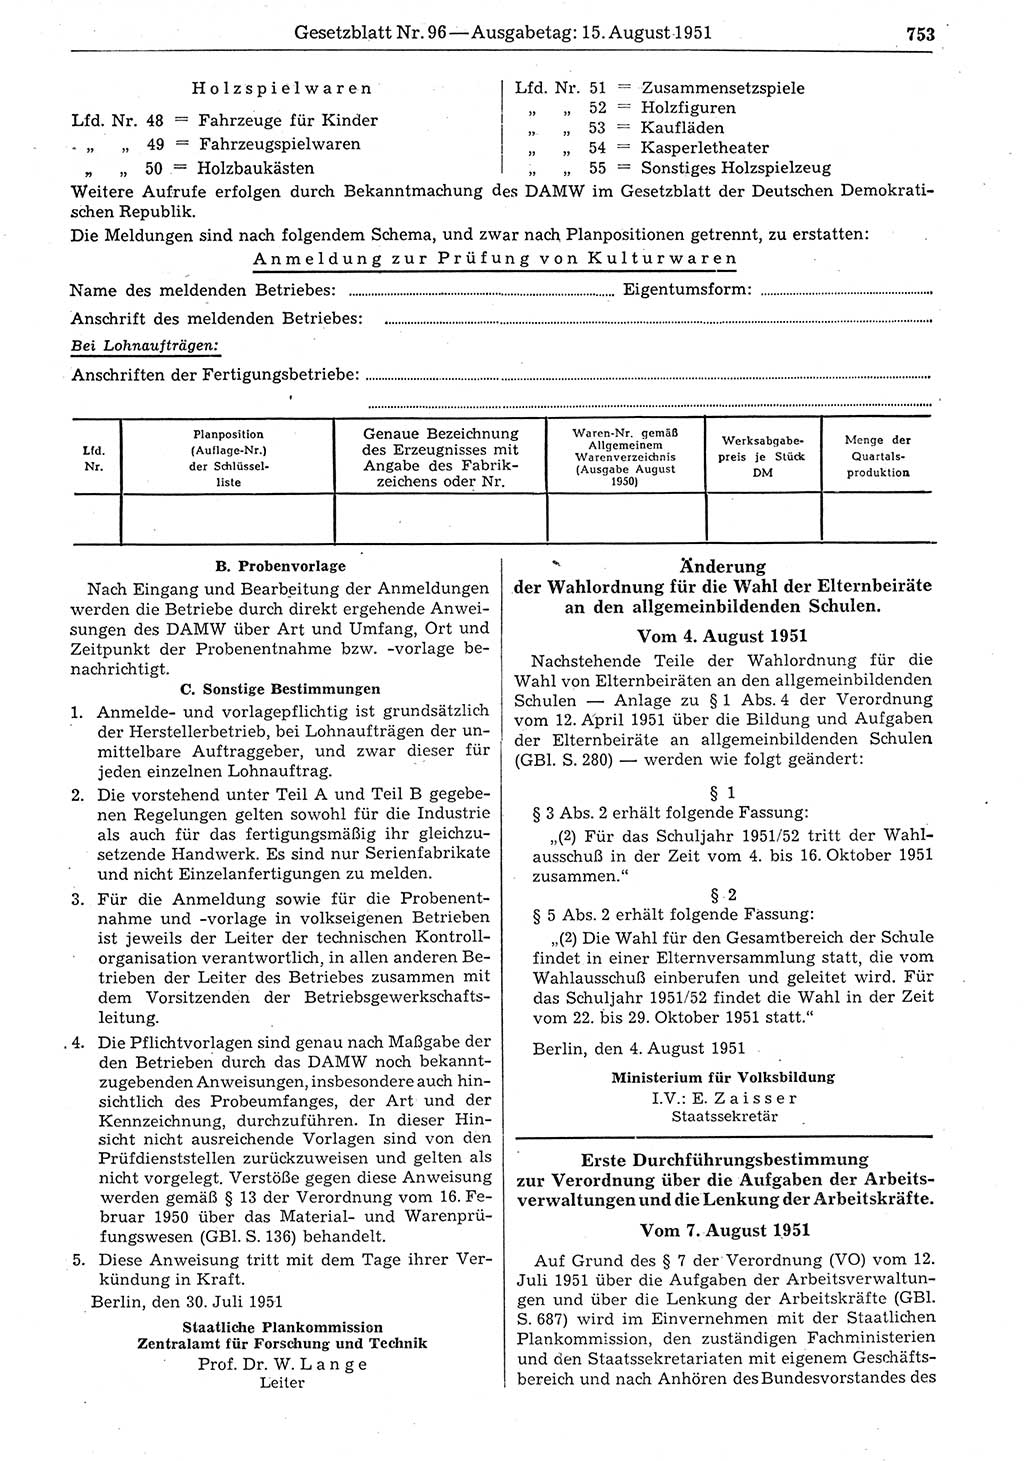 Gesetzblatt (GBl.) der Deutschen Demokratischen Republik (DDR) 1951, Seite 753 (GBl. DDR 1951, S. 753)